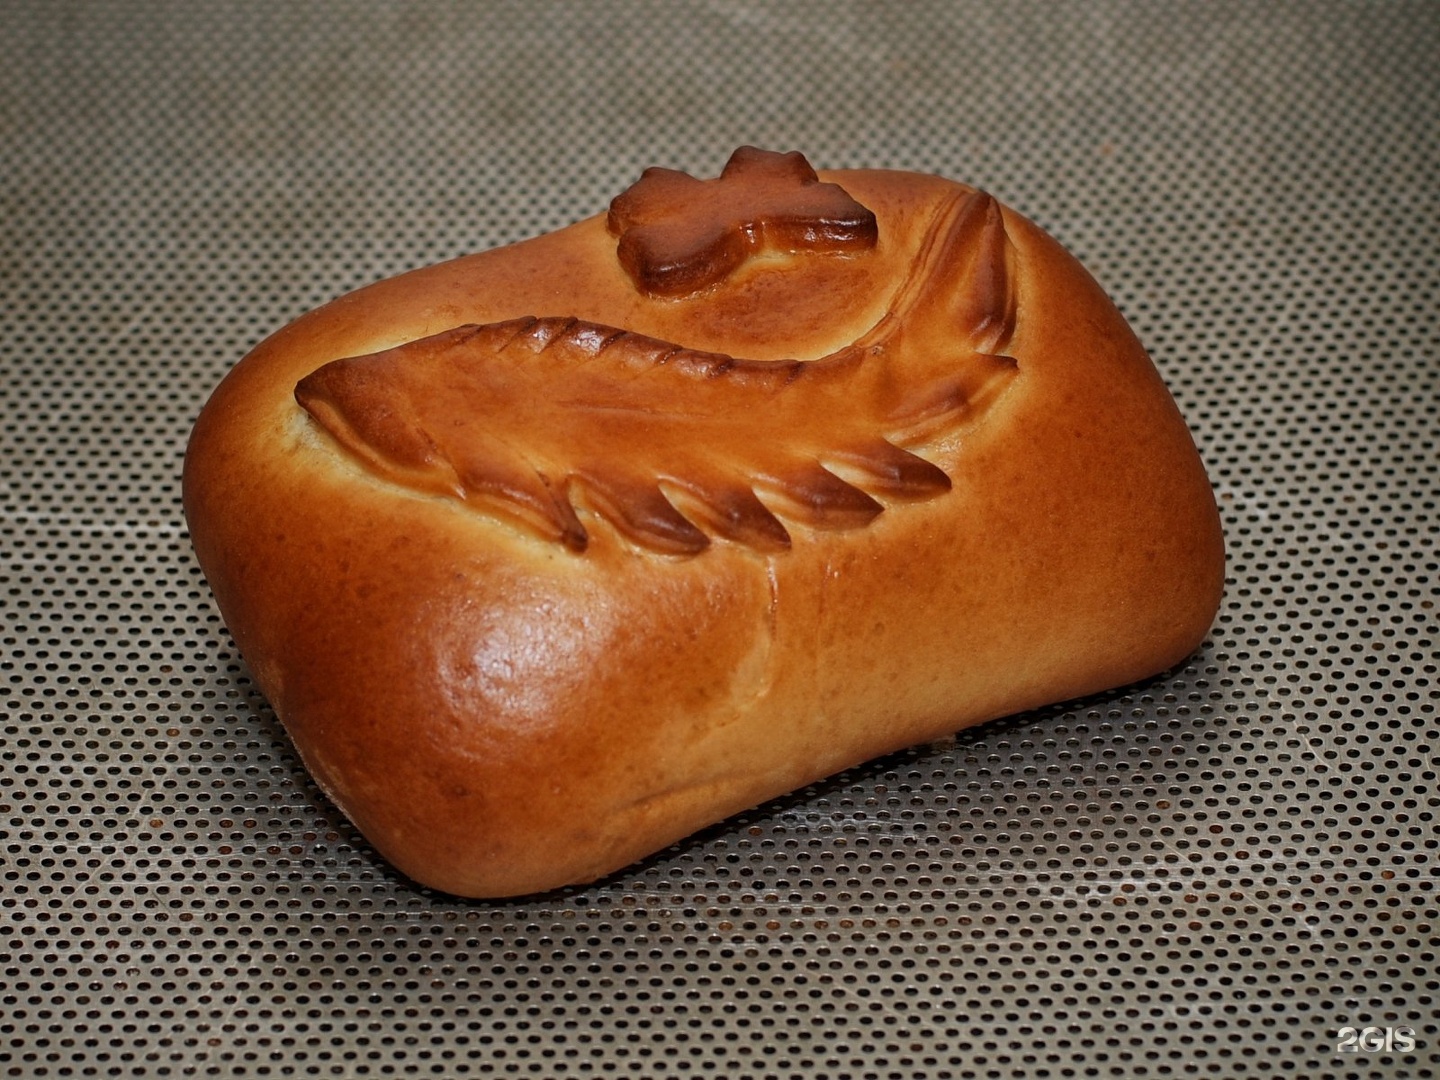 Пироги на заказ Питер. Хлеб из Питера. Пирожки в виде мышей. Пирожок в форме жука.